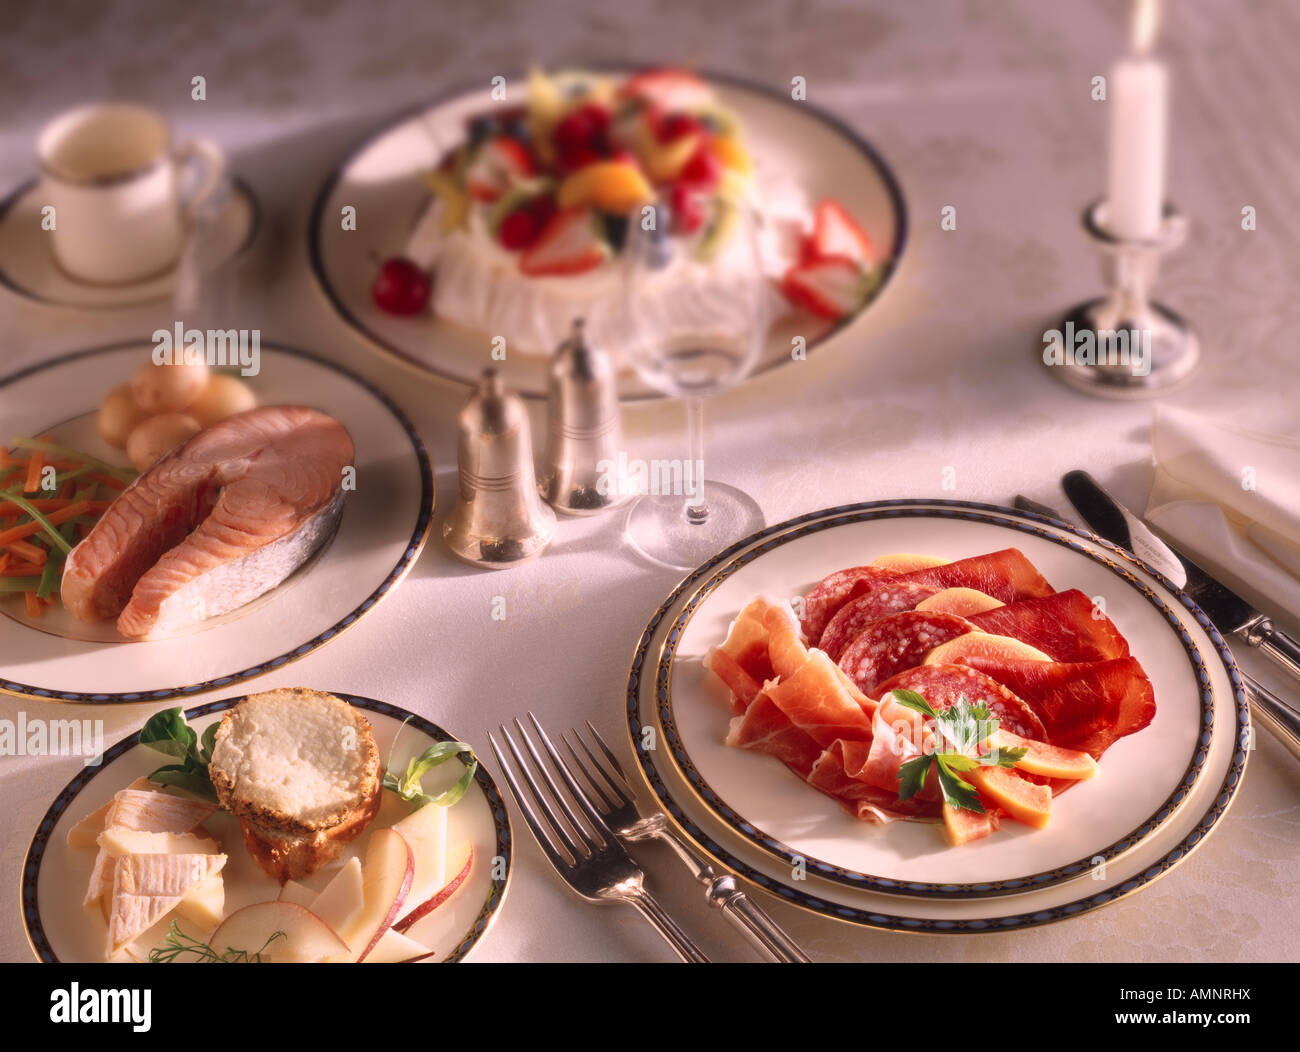 Komplette Mahlzeit Vorspeise Charcutterie, Hauptgericht, Lachs Steak, Dessert Pavlova. Abendessen oder eine Atmosphäre auf einem Tisch. Stockfoto